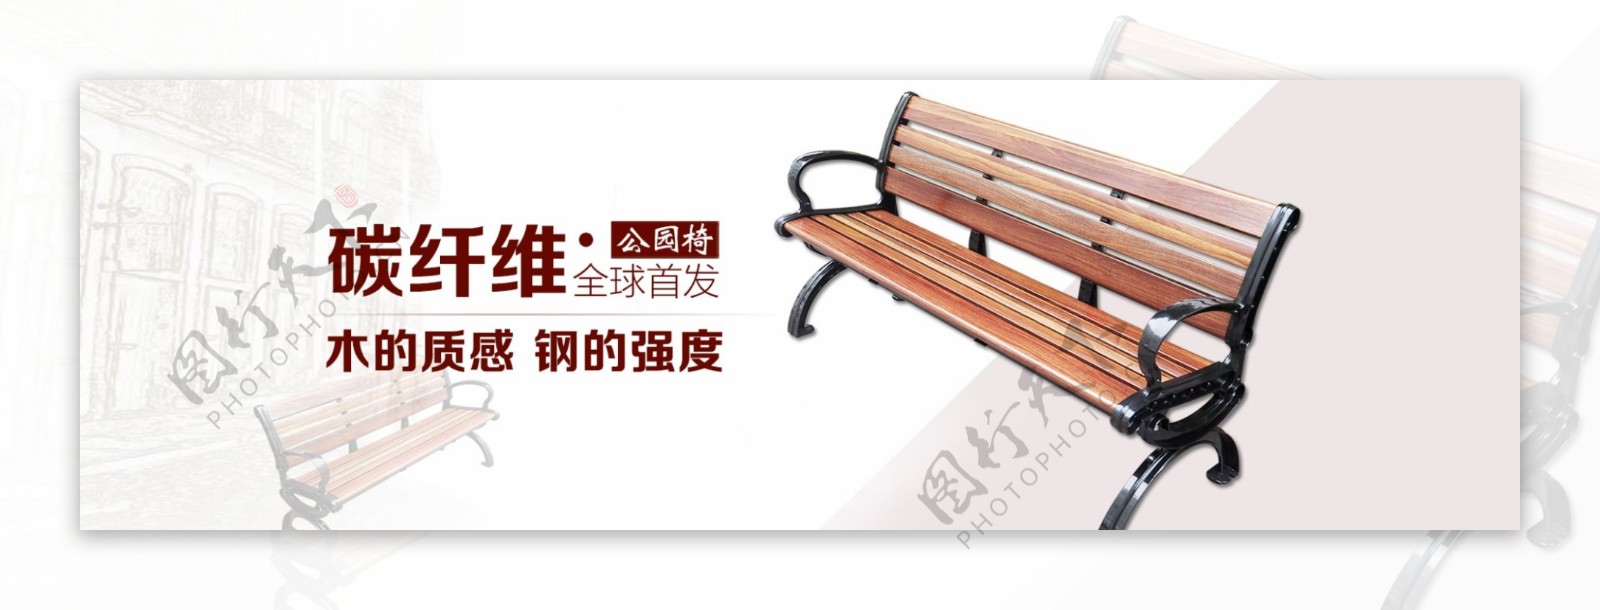 碳纤维公园椅淘宝全屏海报户外长椅家具海报